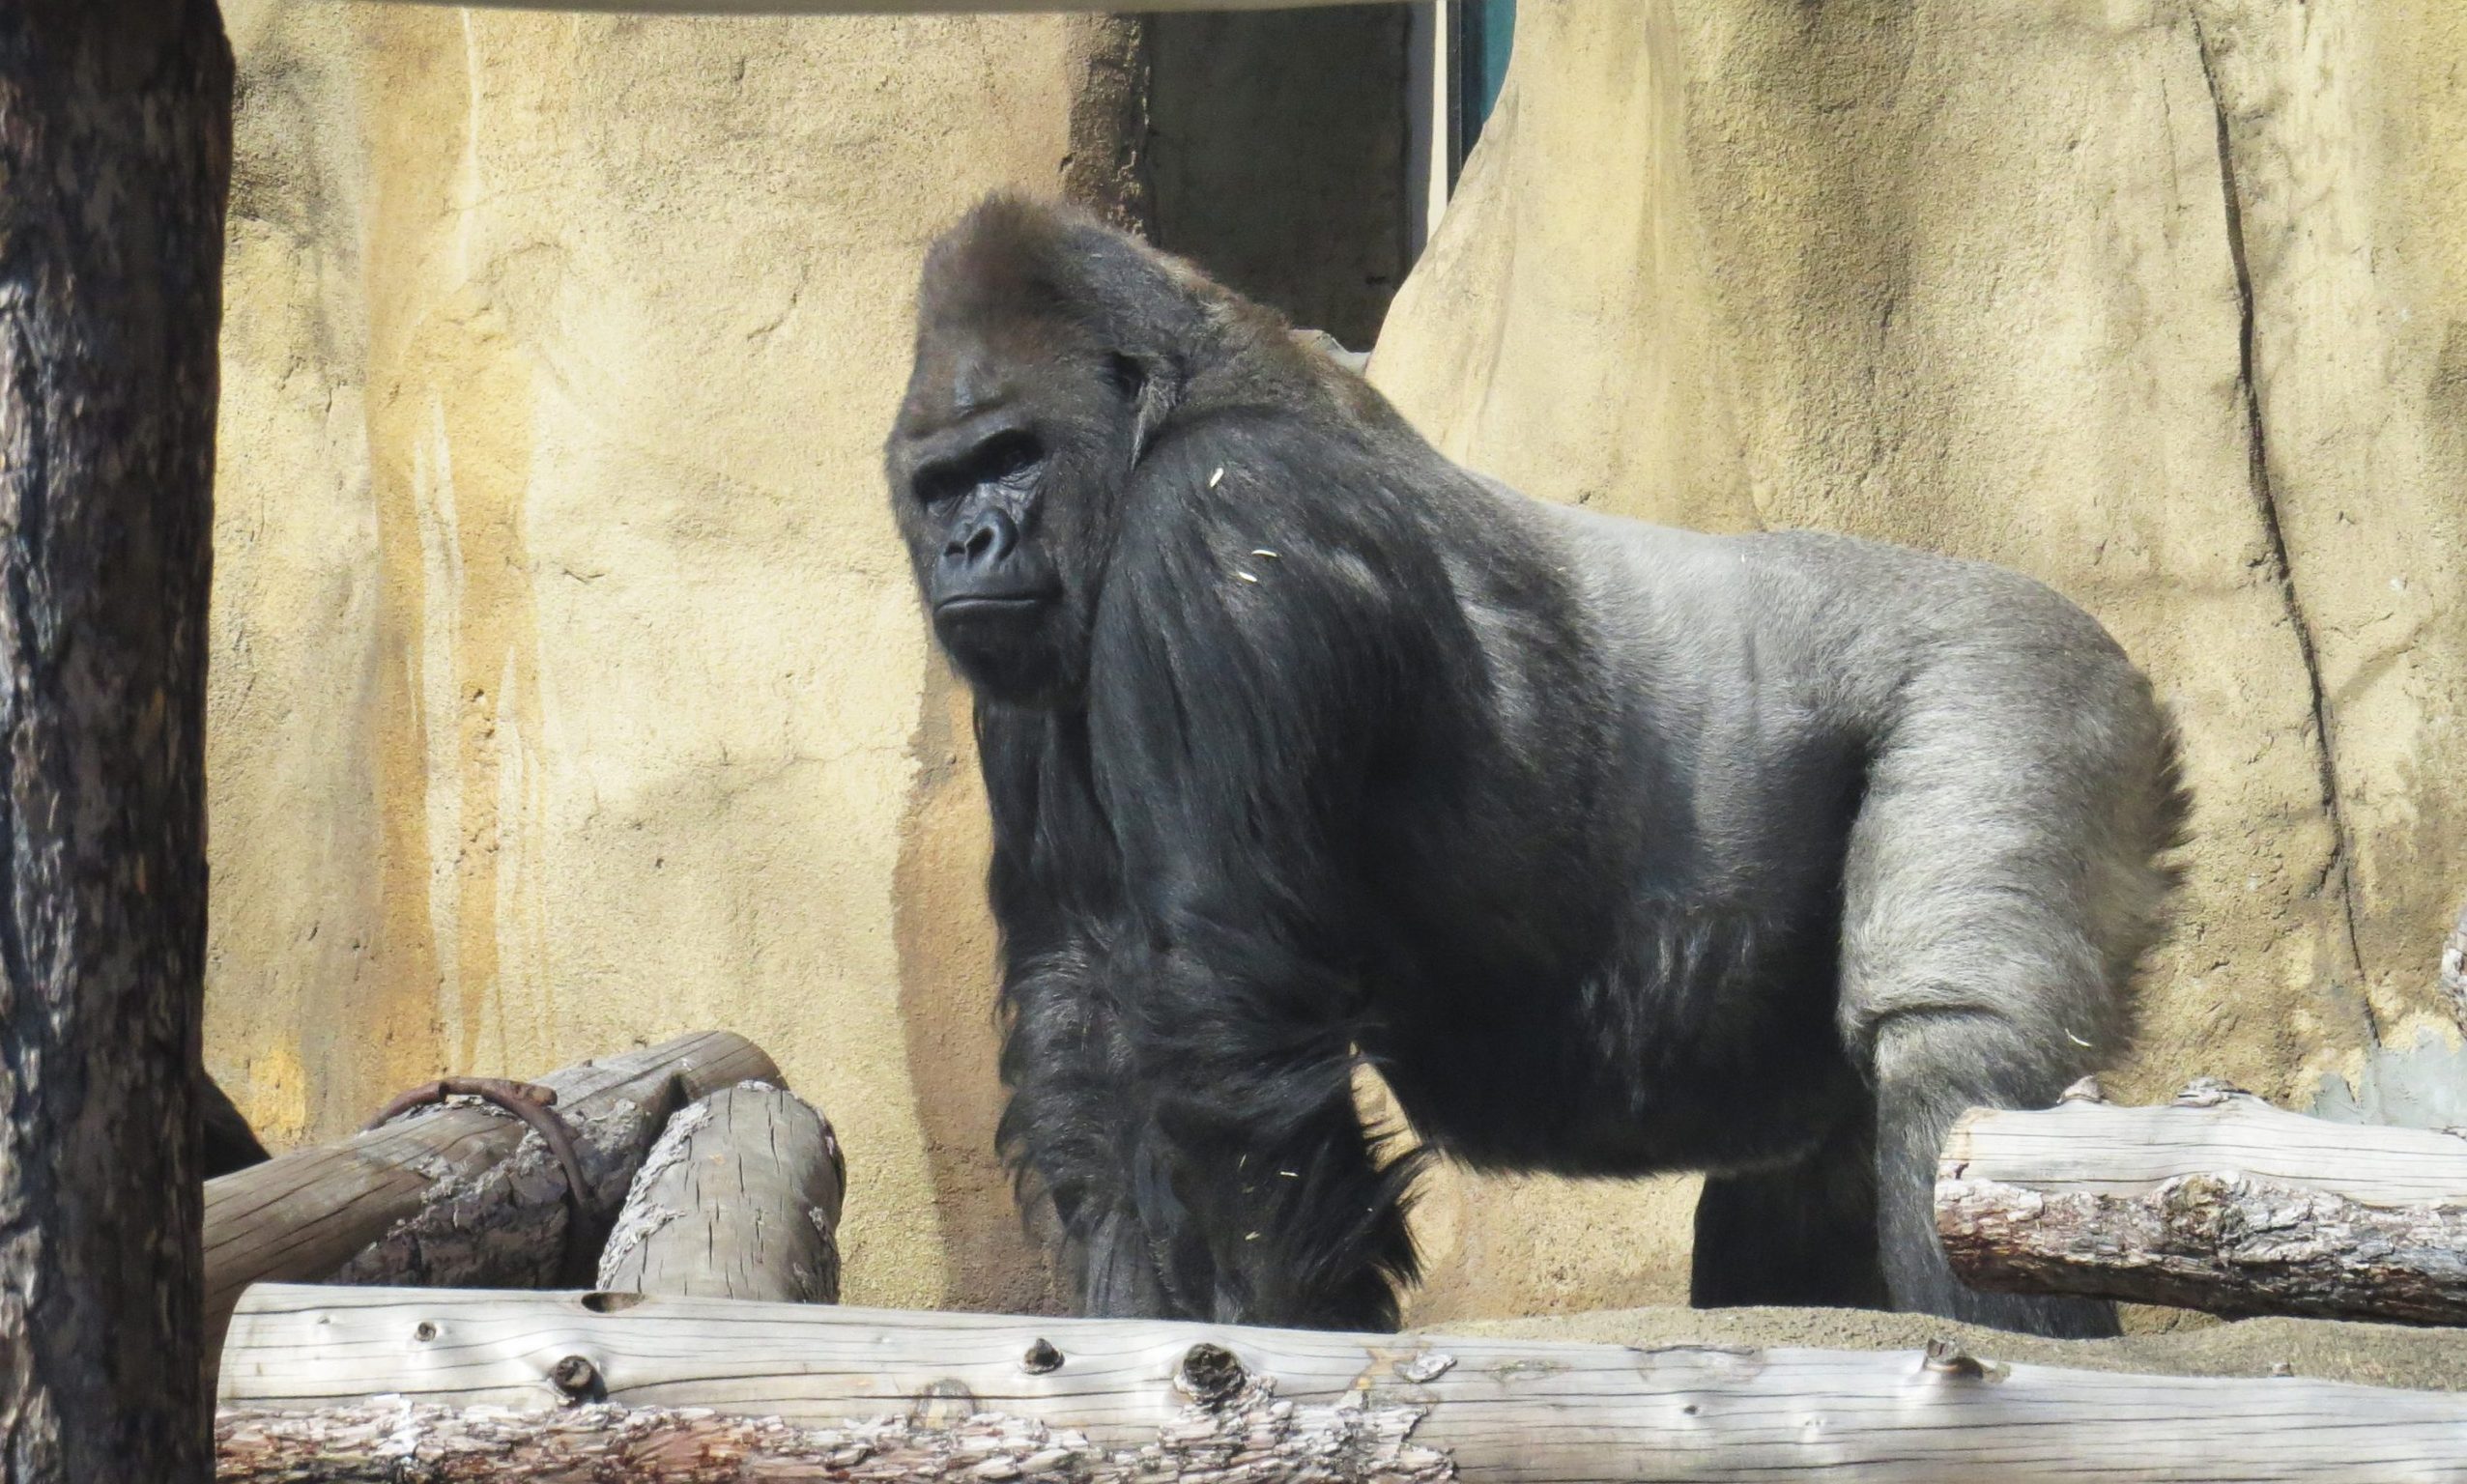 Визурий и остальные гориллы Московского зоопарка вышли в уличный вольер после зимы. Фото предоставили в пресс-службе Московского зоопарка